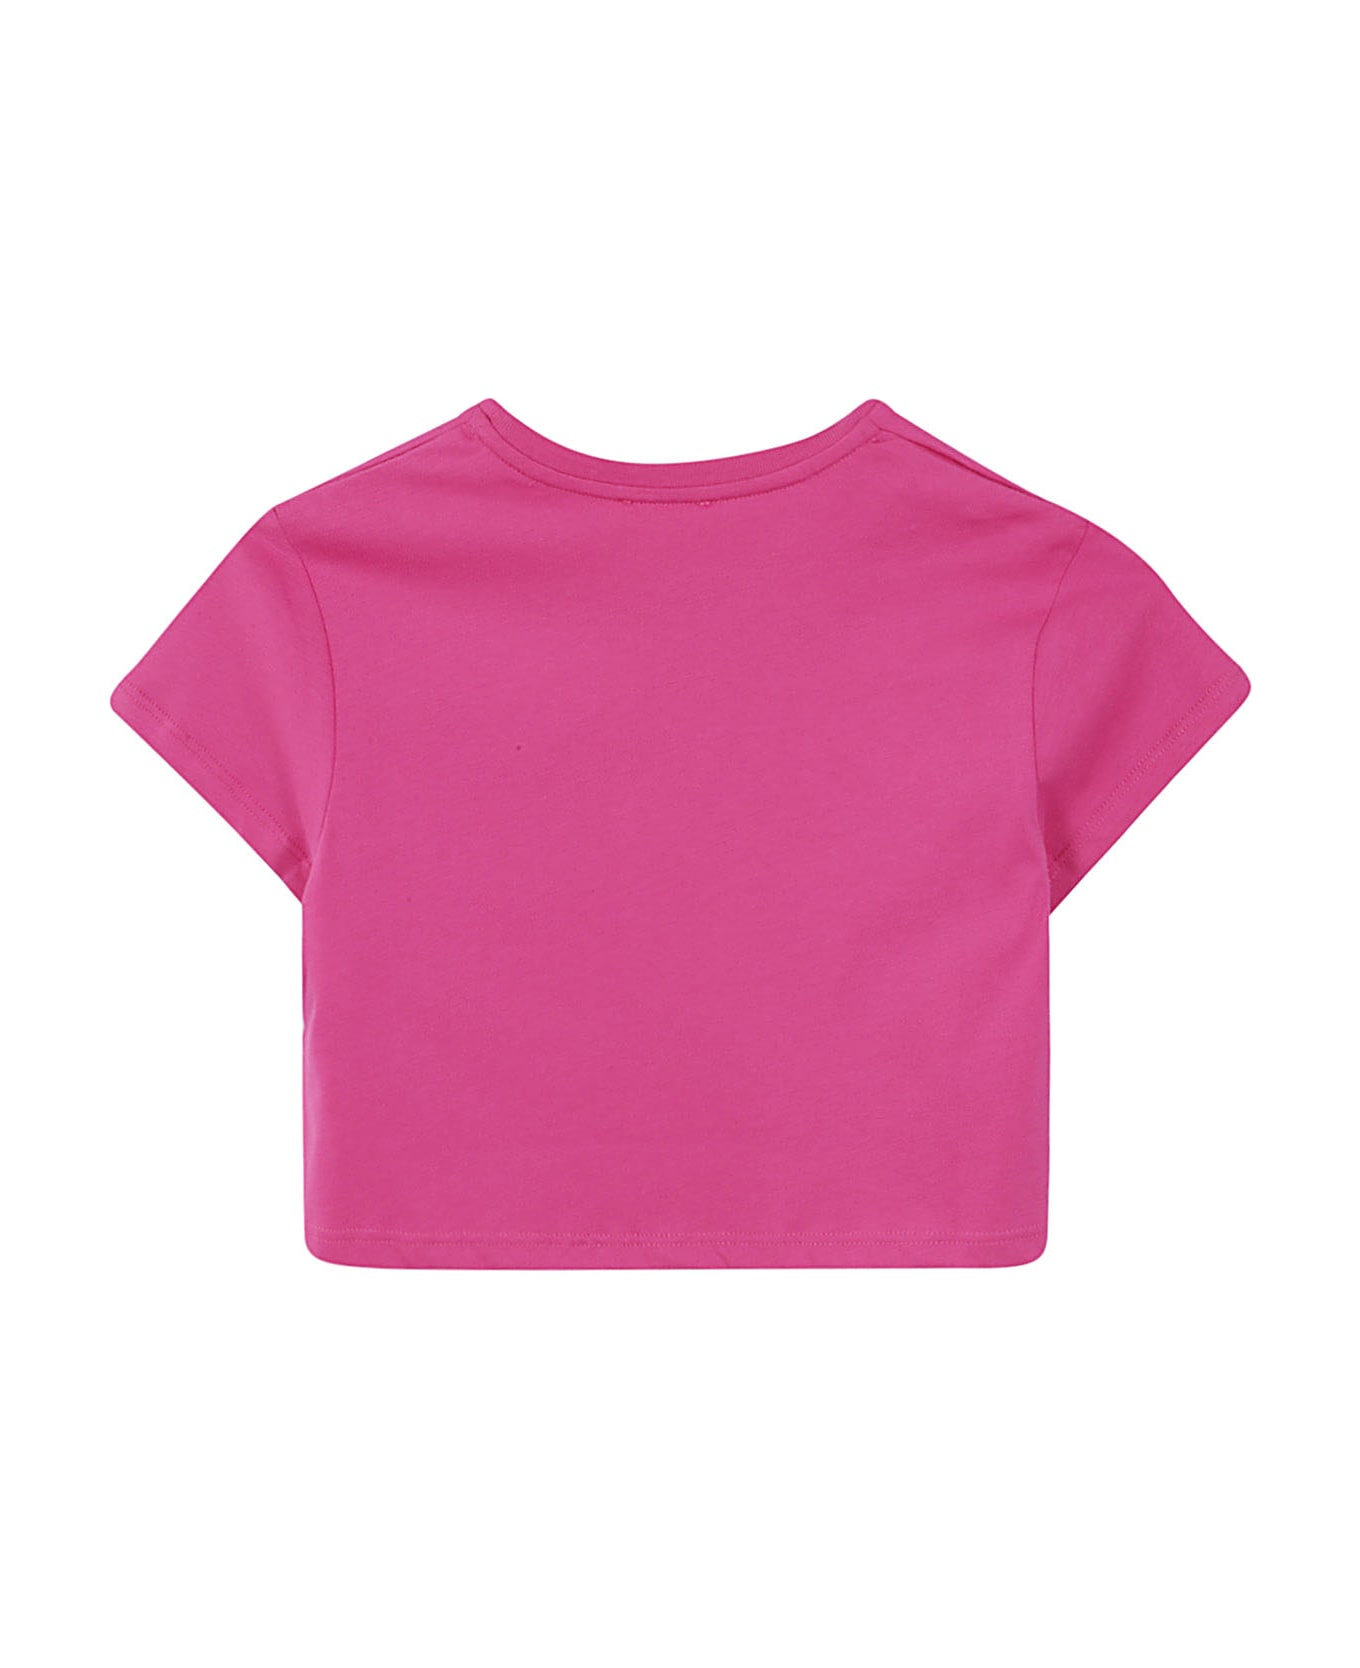 Chloé Tee Shirt - L Rosa